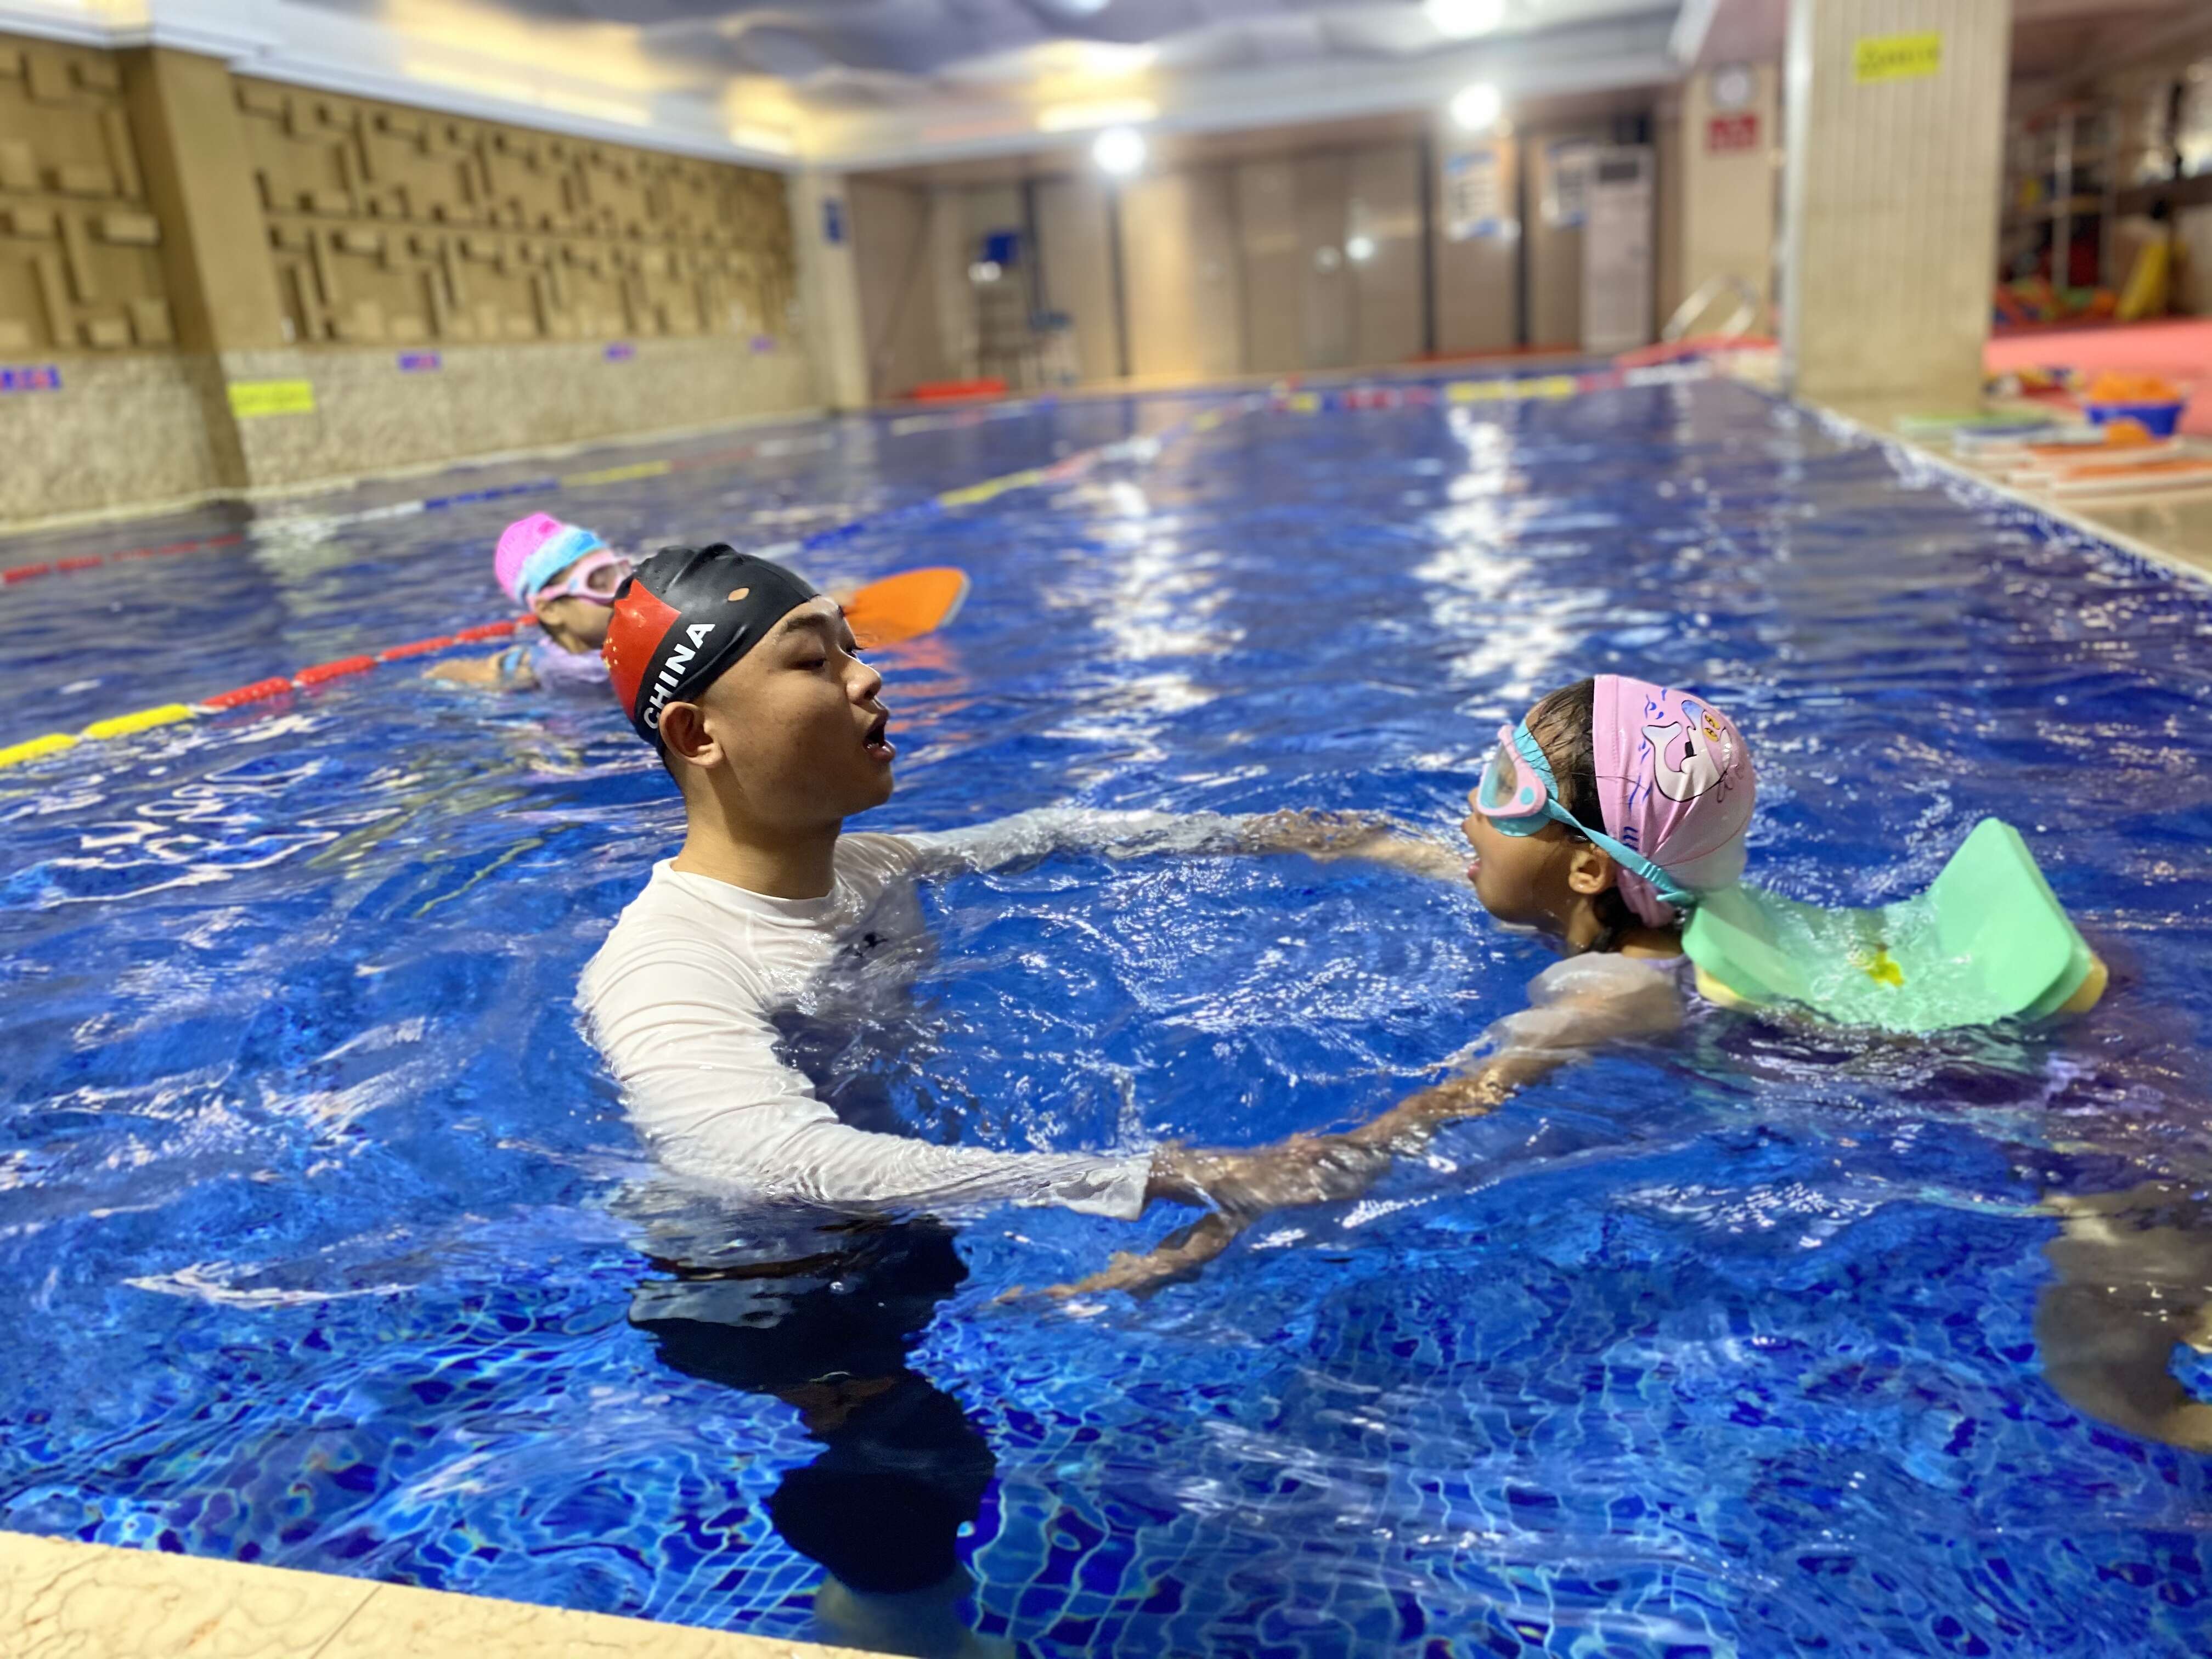 创办的儿童预防溺水培训基地内,教练员正在对学生进行游泳技巧指导